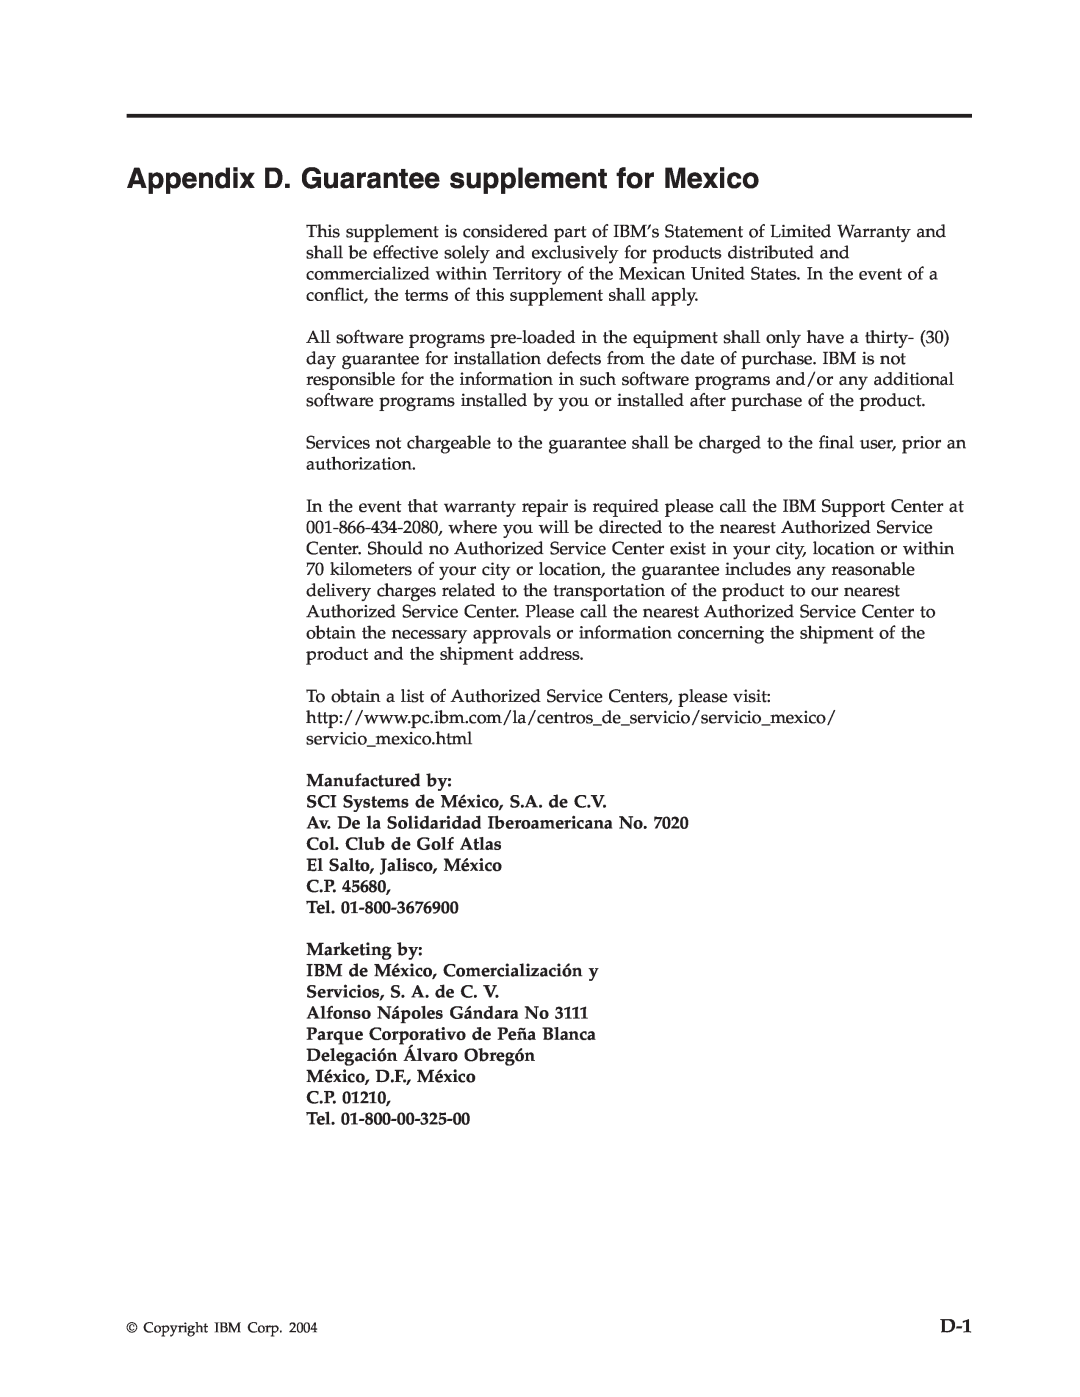 IBM 73P4518 manual Appendix D. Guarantee supplement for Mexico, Manufactured by SCI Systems de México, S.A. de C.V 